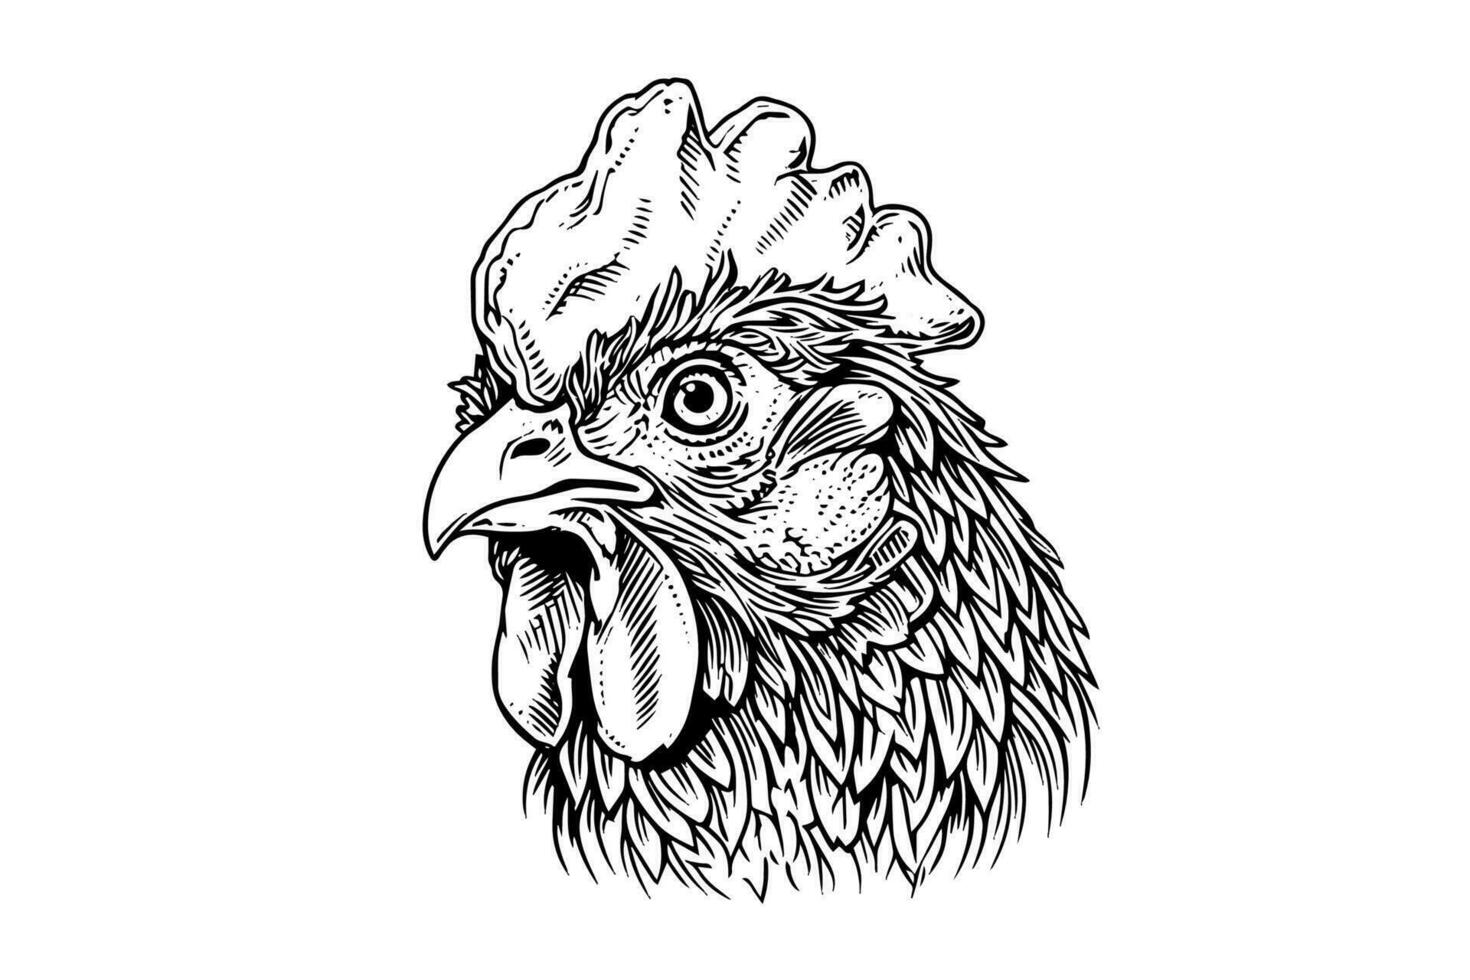 Hähnchen oder Henne Kopf gezeichnet im Jahrgang Gravur Stil Vektor Illustration